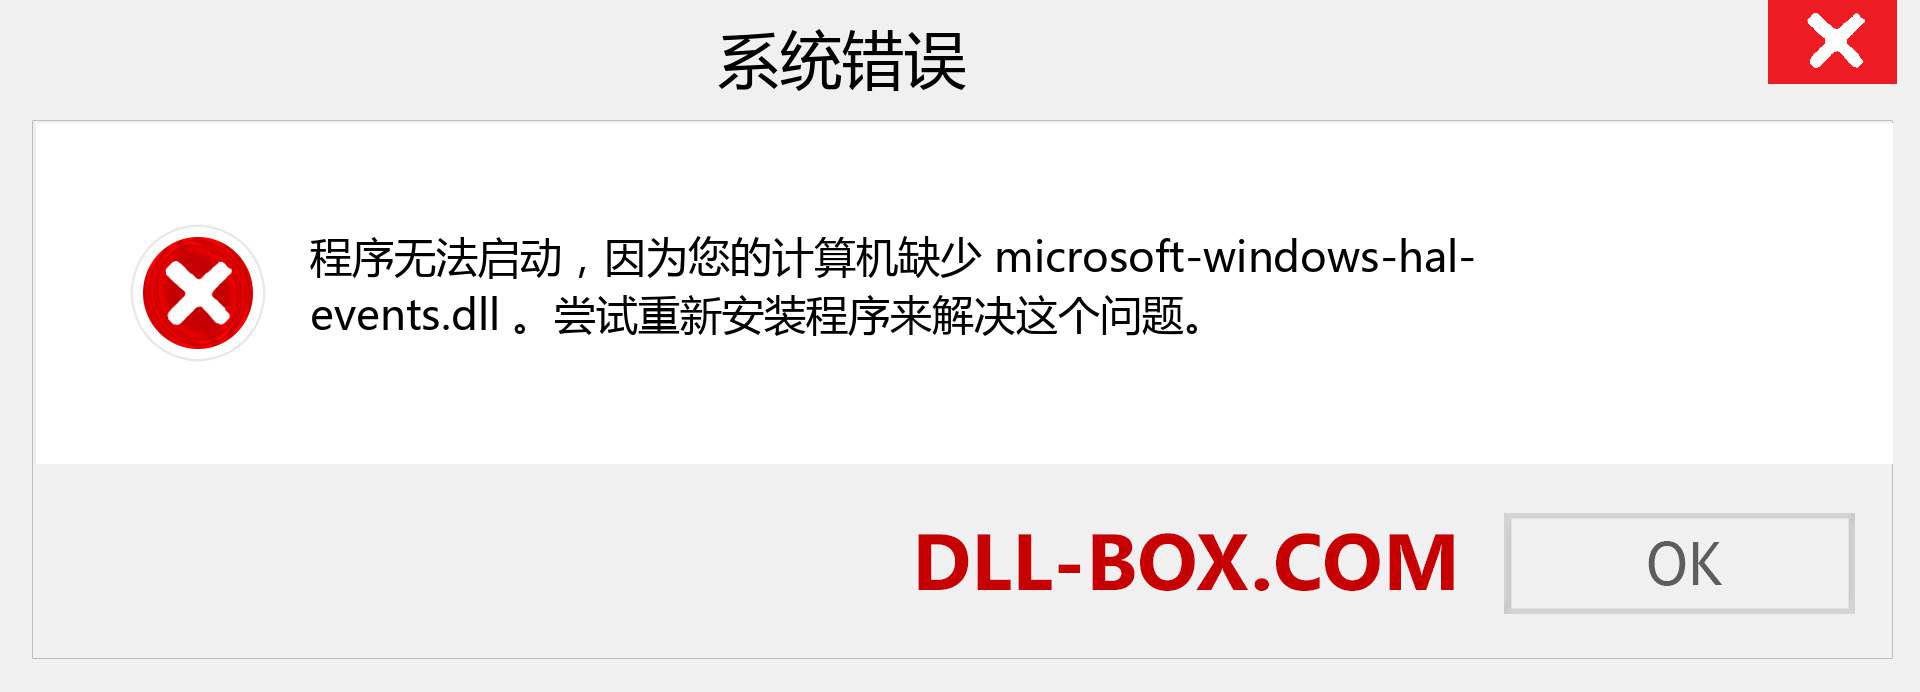 microsoft-windows-hal-events.dll 文件丢失？。 适用于 Windows 7、8、10 的下载 - 修复 Windows、照片、图像上的 microsoft-windows-hal-events dll 丢失错误